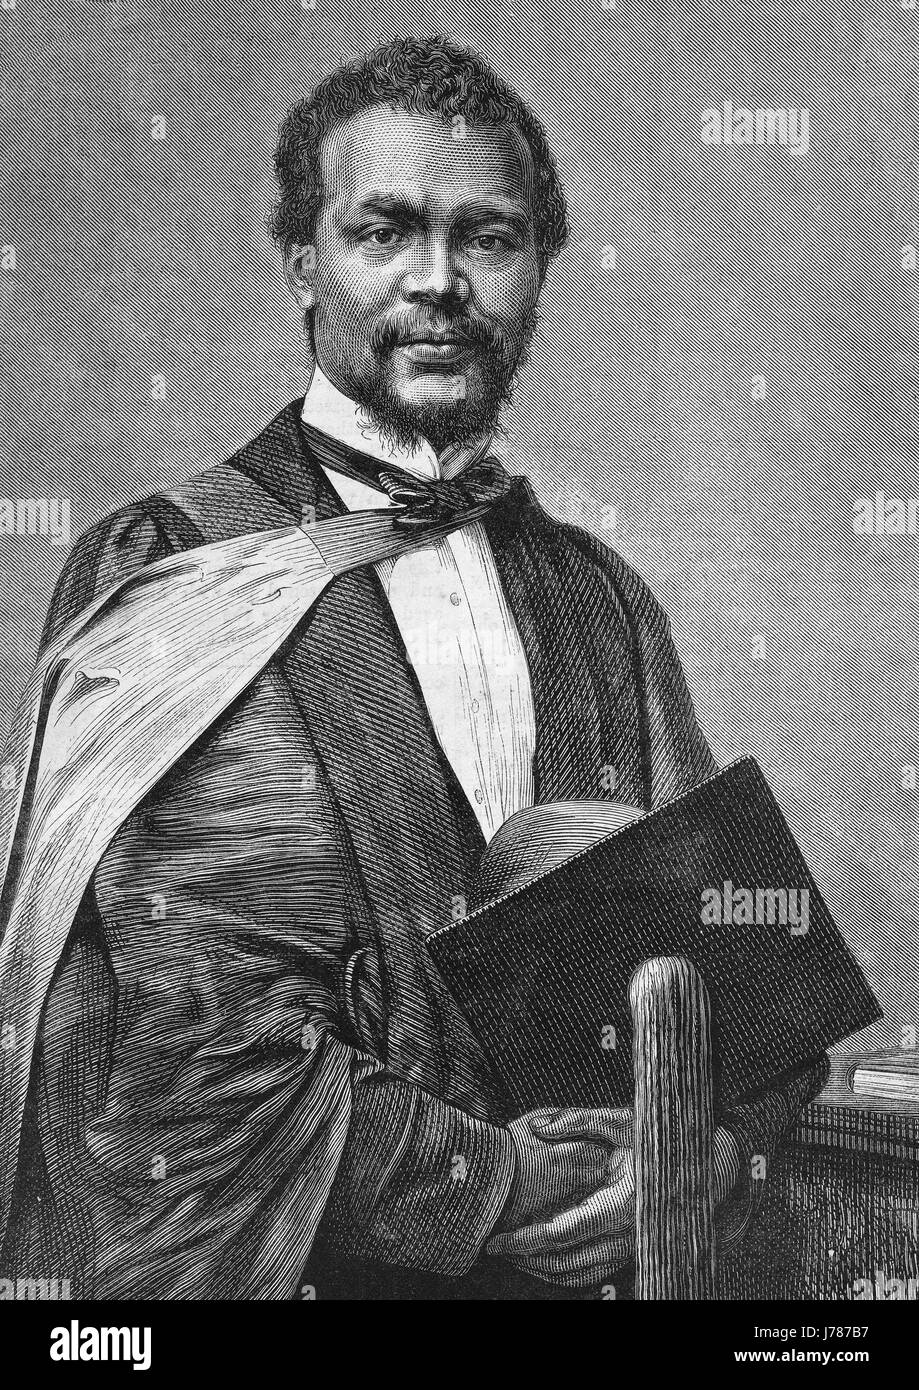 CHRISTOPHER JAMES DAVIS (1842-1870) Arzt in Barbados geboren, an Pocken während ein freiwilliger Arzt in Franco-Preussischer Krieg of1870 starb Stockfoto